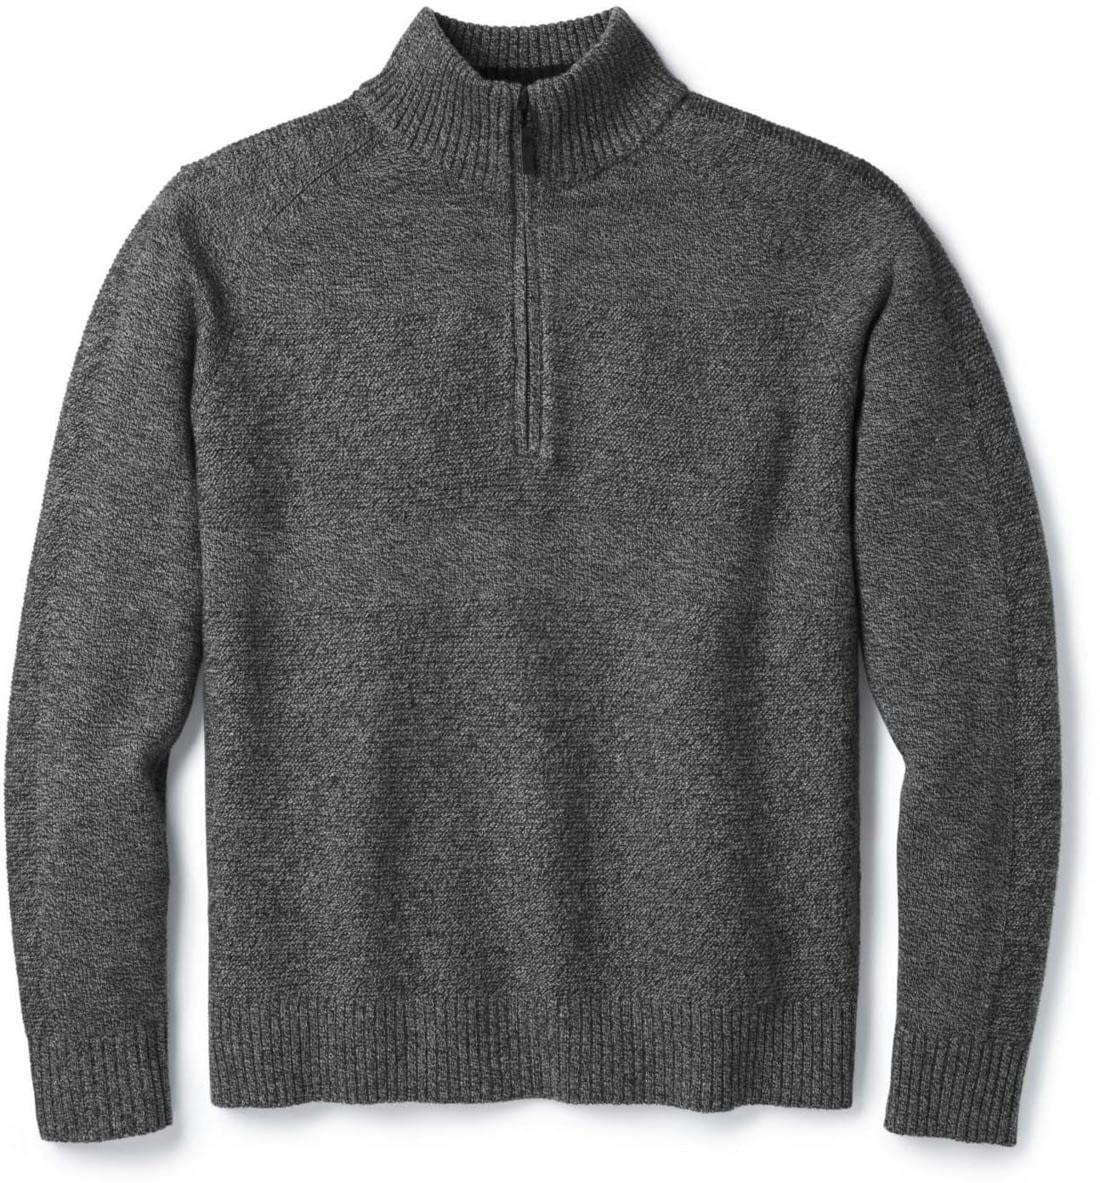 Smartwool Men's Ripple Ridge Half Zip Sweater